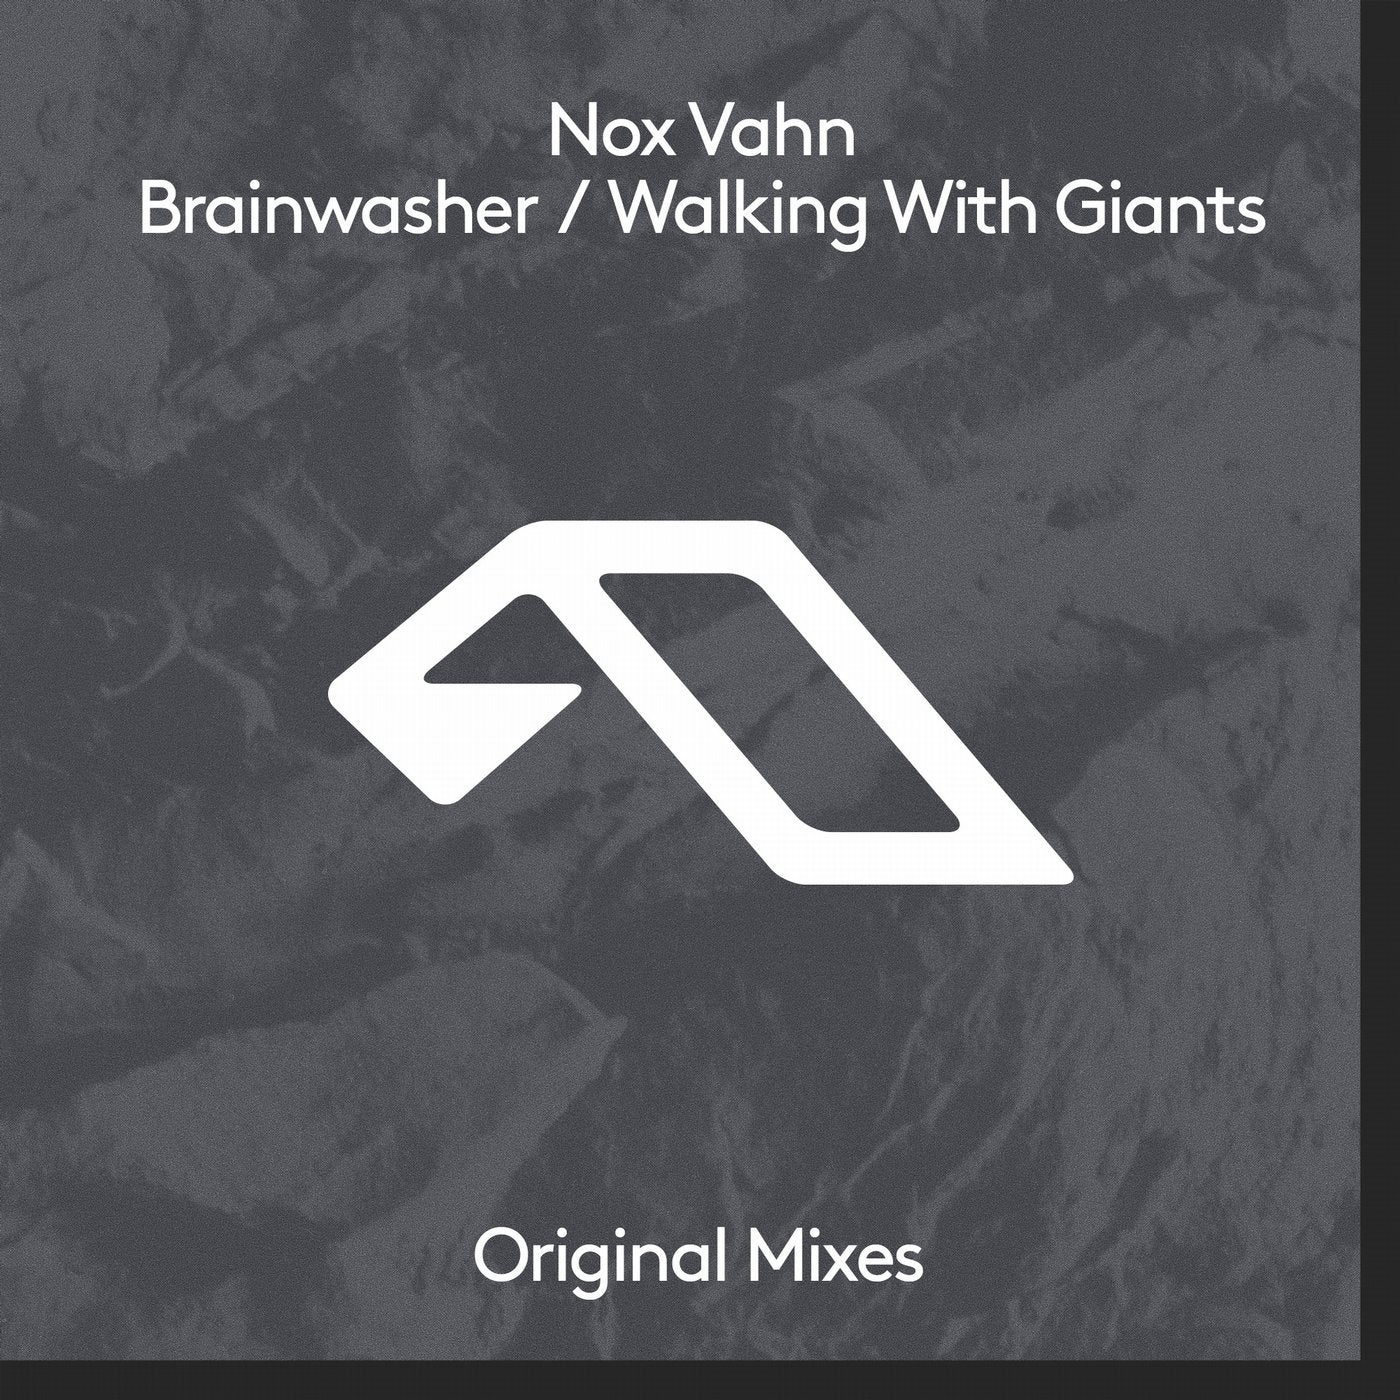 Brainwasher / Walking With Giants